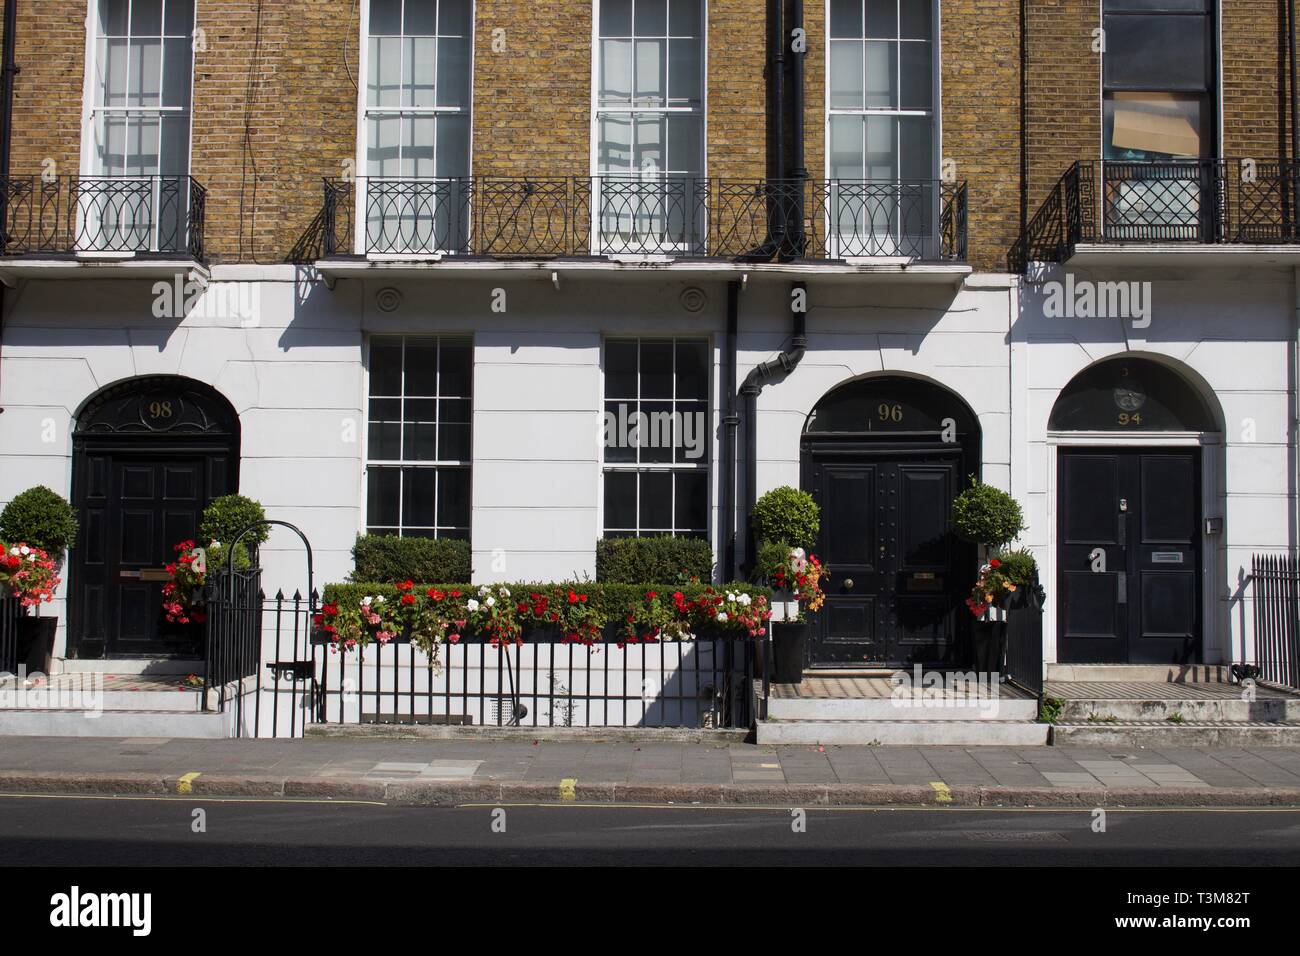 Facciate di case gentrified a Londra Foto Stock